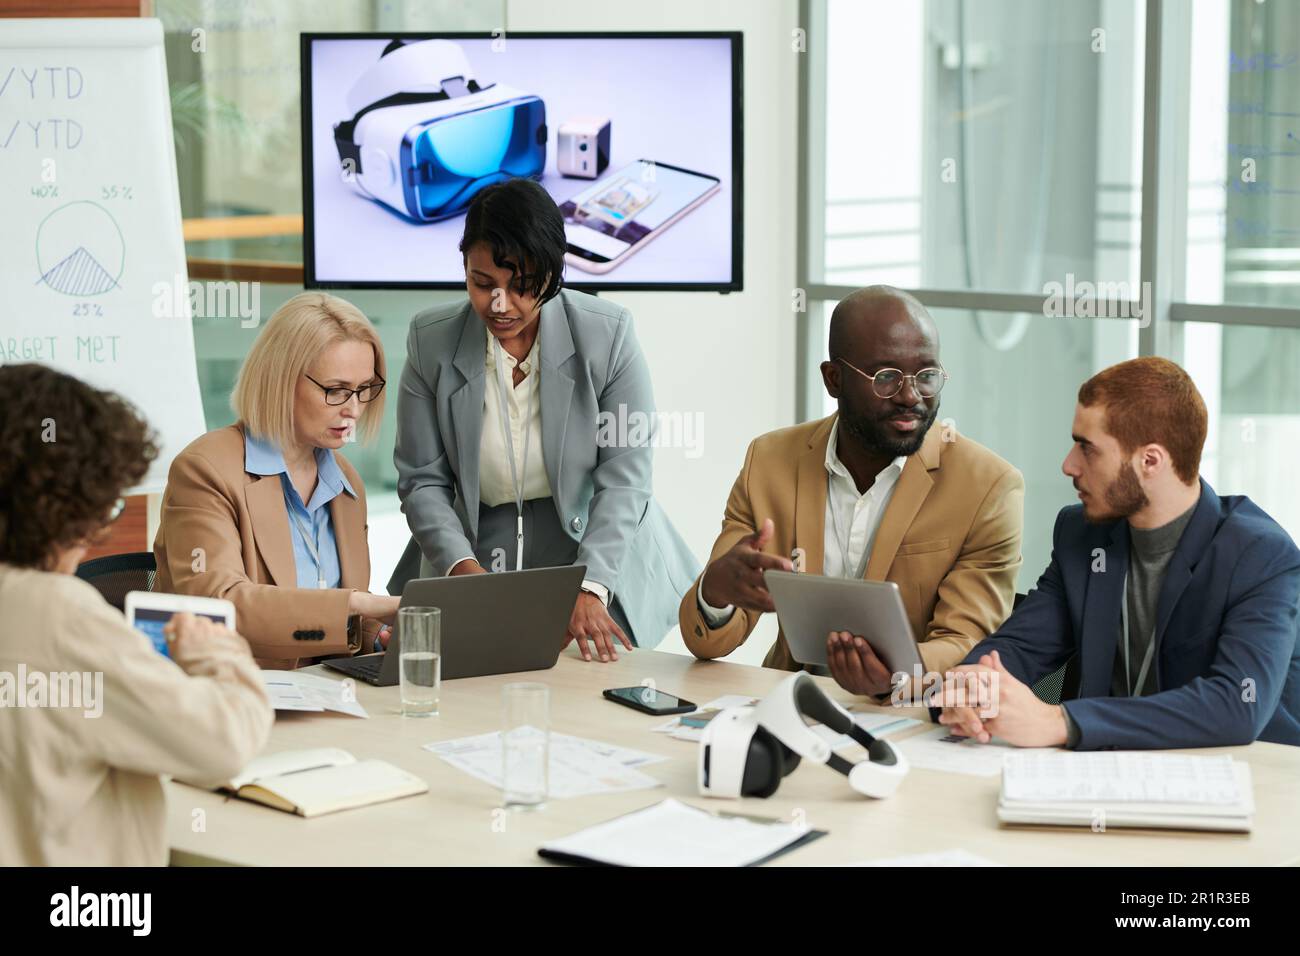 Gruppe interkultureller Mitarbeiter mit mobilen Geräten, die Arbeitspunkte bei Meetings besprechen oder Präsentationen für Konferenzen vorbereiten Stockfoto